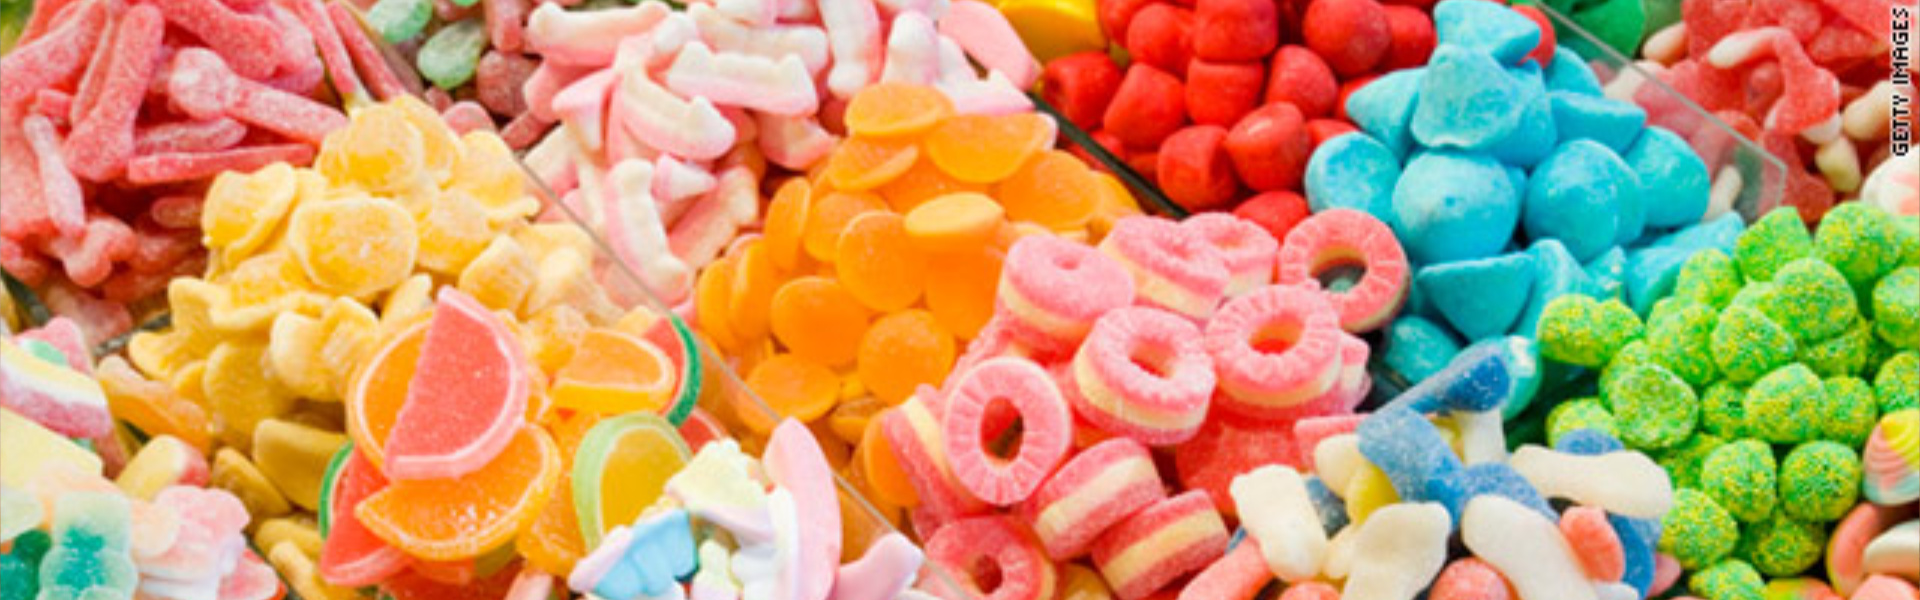 Assorted gummy candies